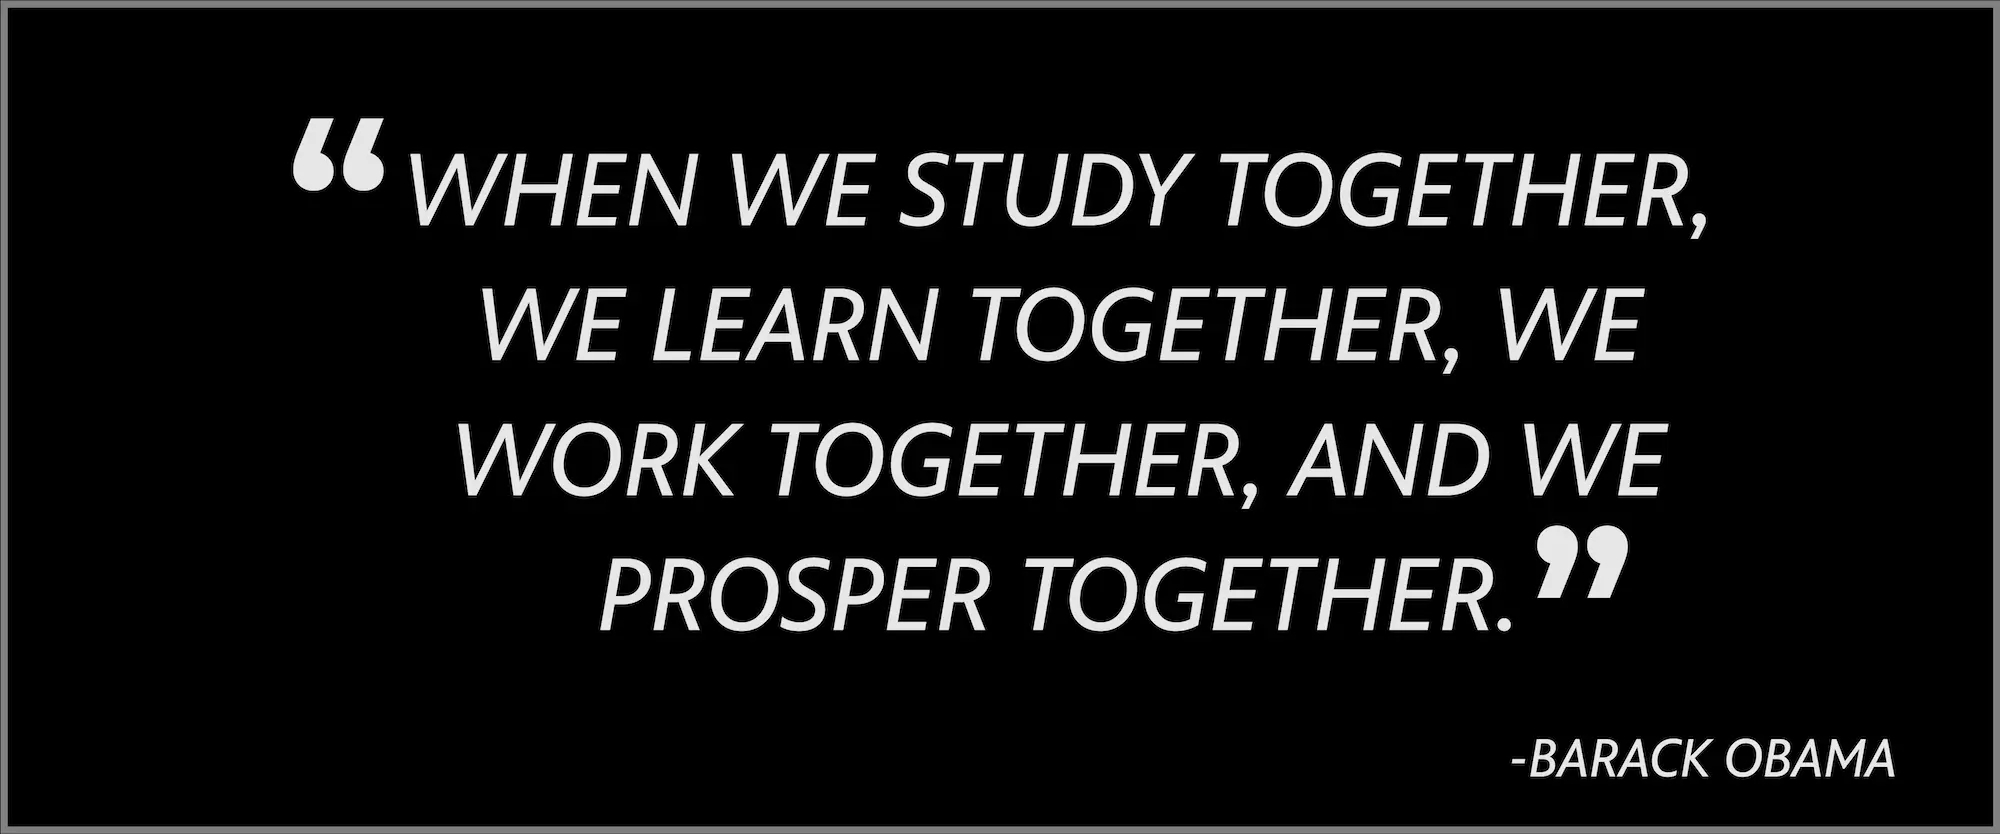 When we study together, we learn together, we work together, and we prosper together. -- Barack Obama